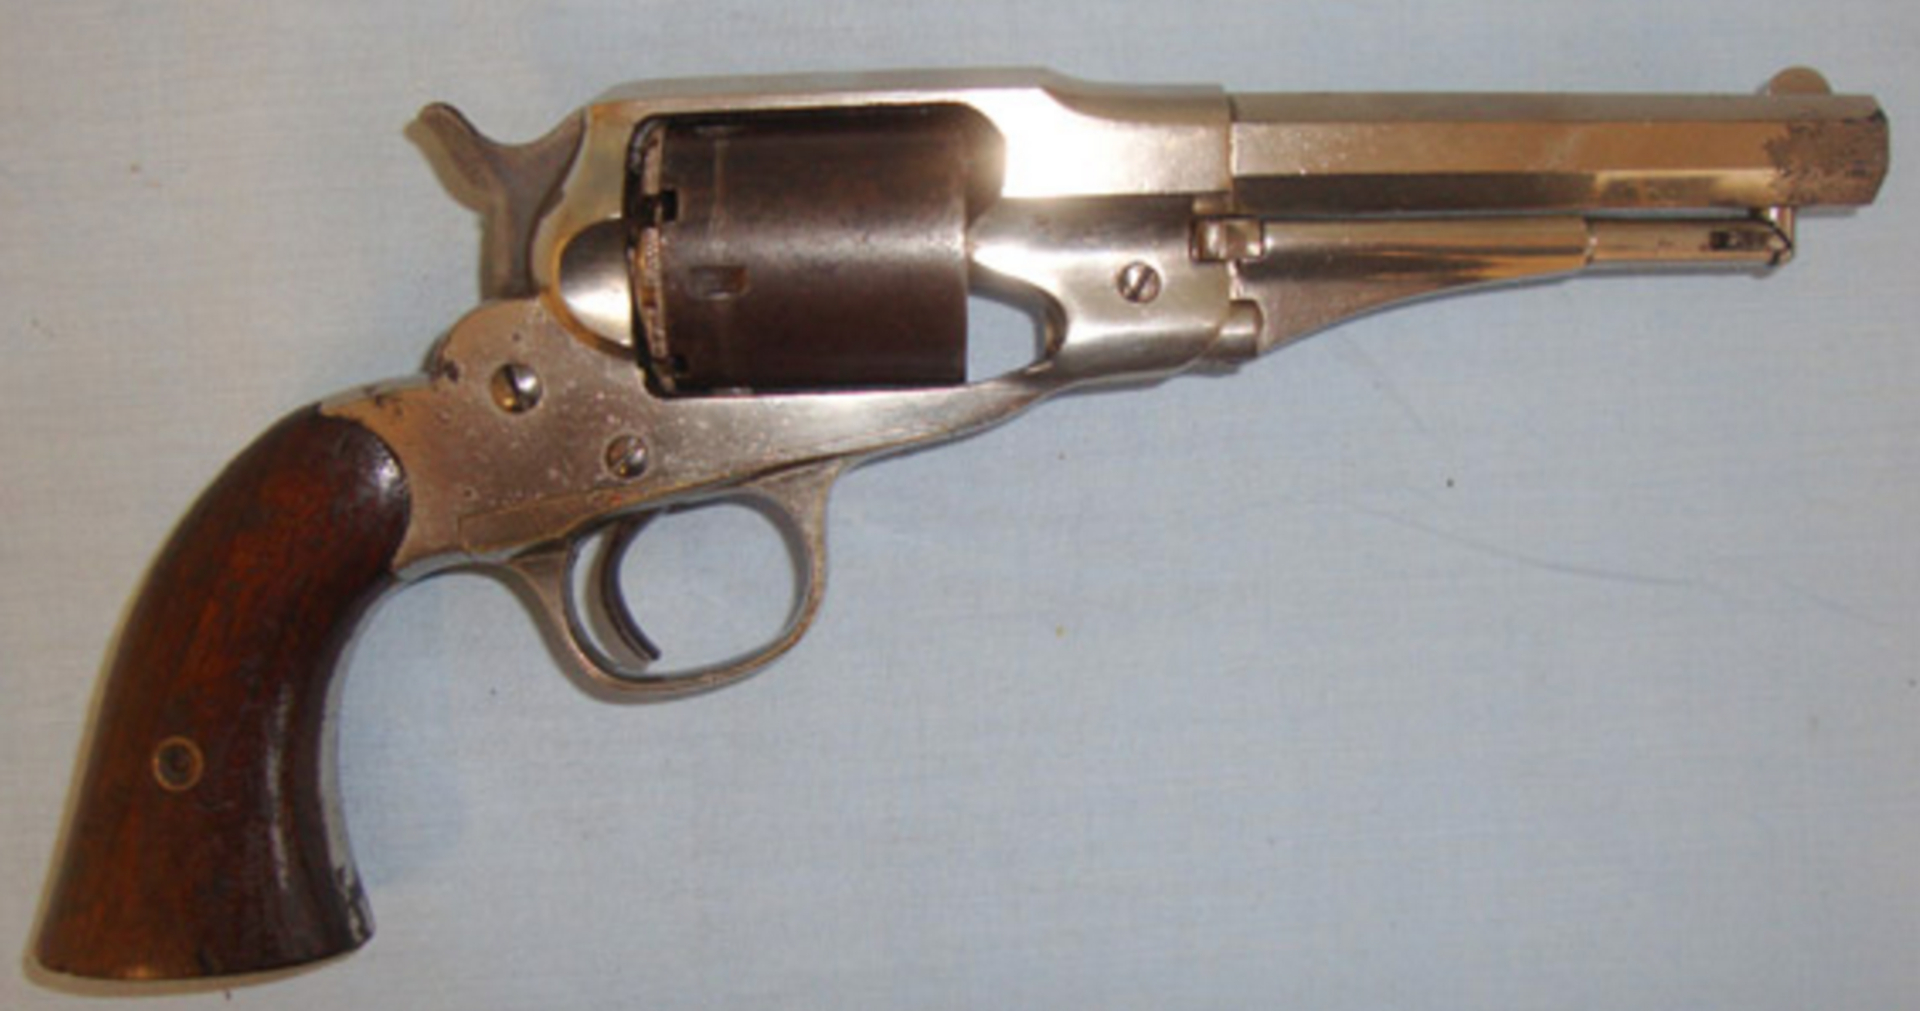 RARE, ORIGINAL, Remington 1858 5 Shot, .36 Rim Fire Calibre Single Action Pocket Revolver - Image 3 of 3